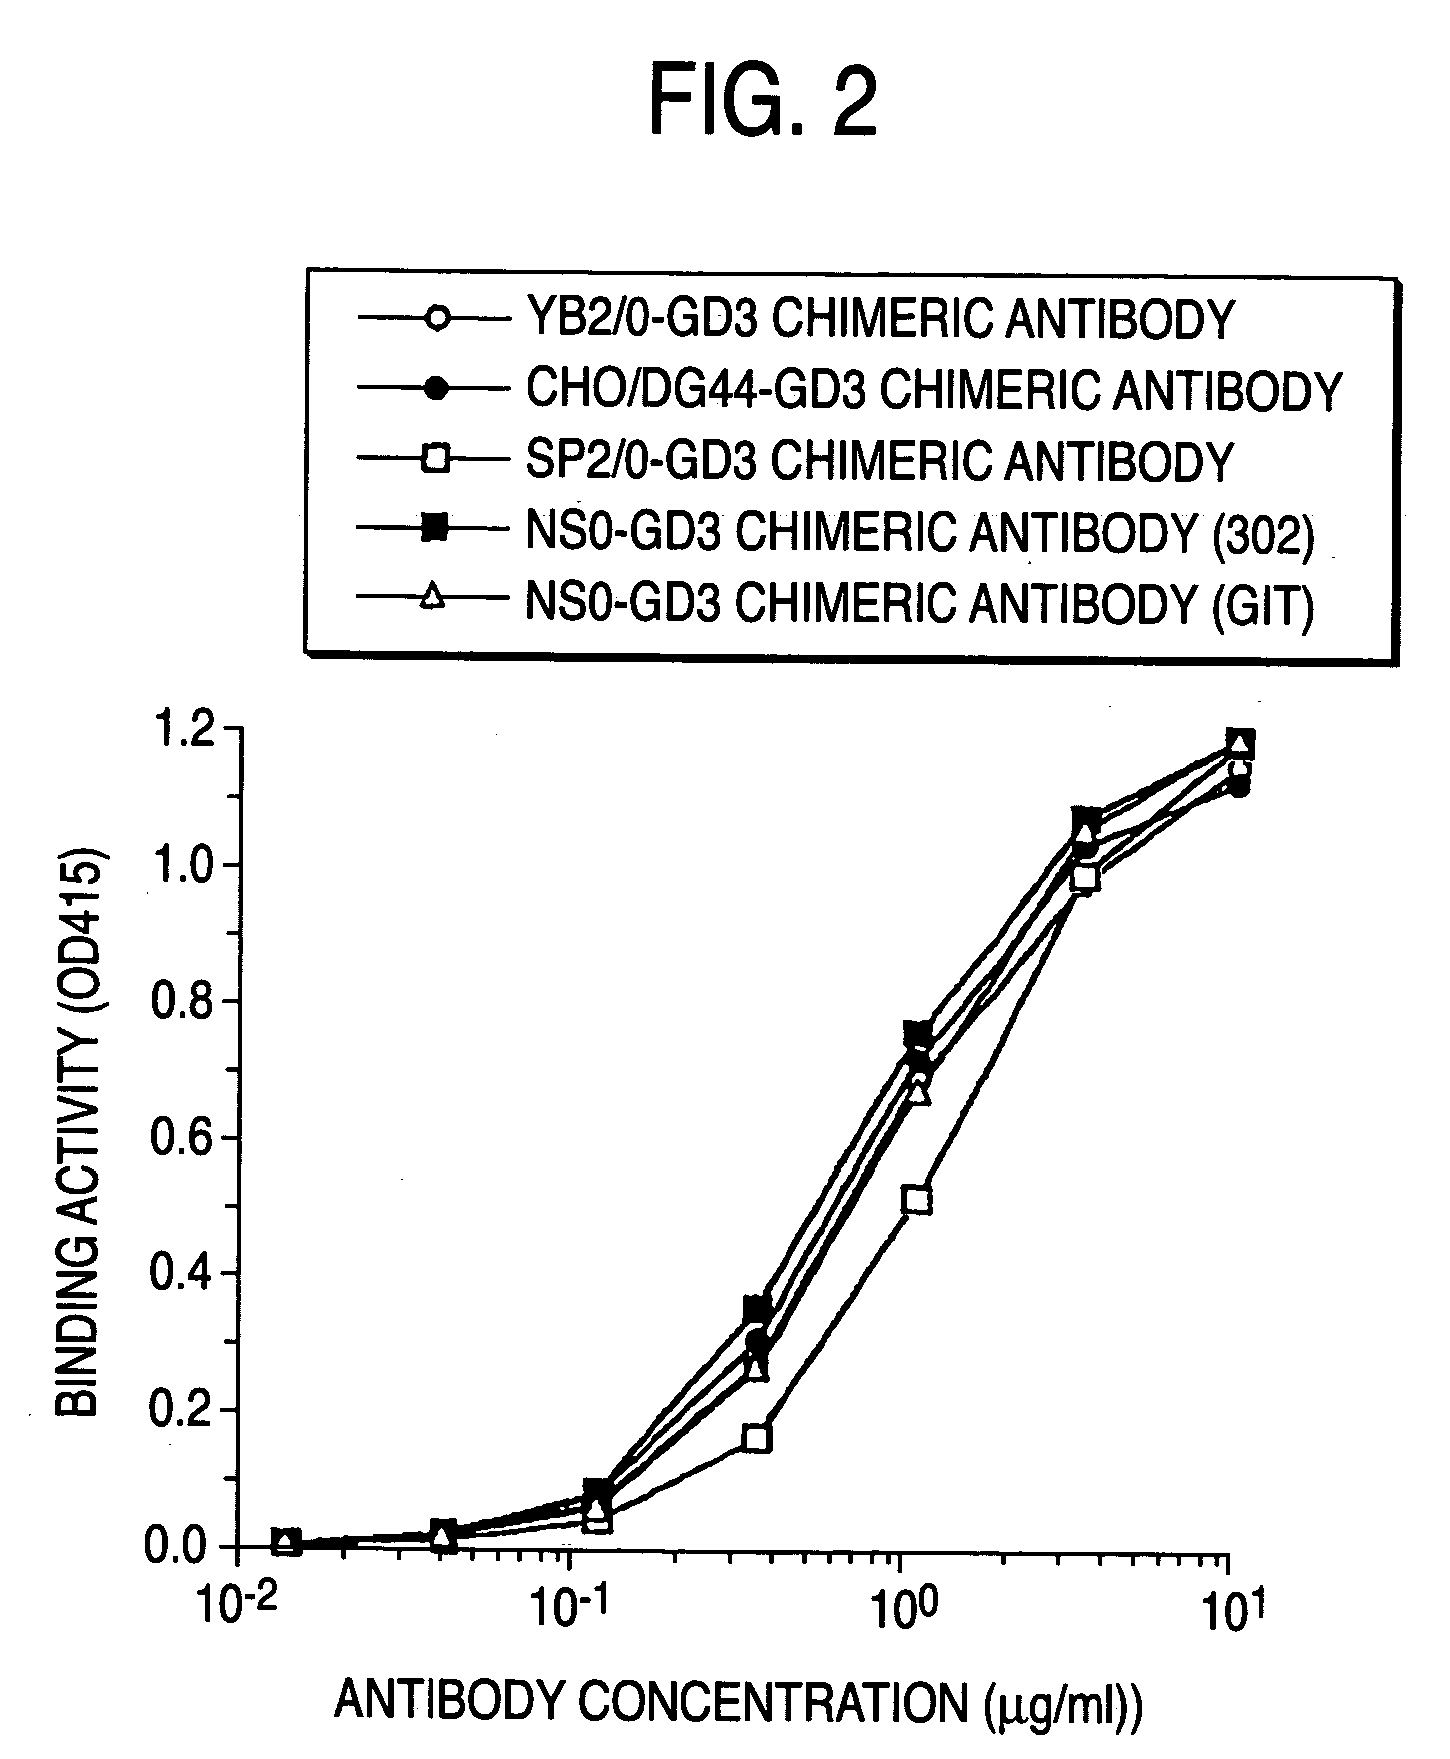 Method of enhancing of binding activity of antibody composition to Fcgamma receptor IIIa